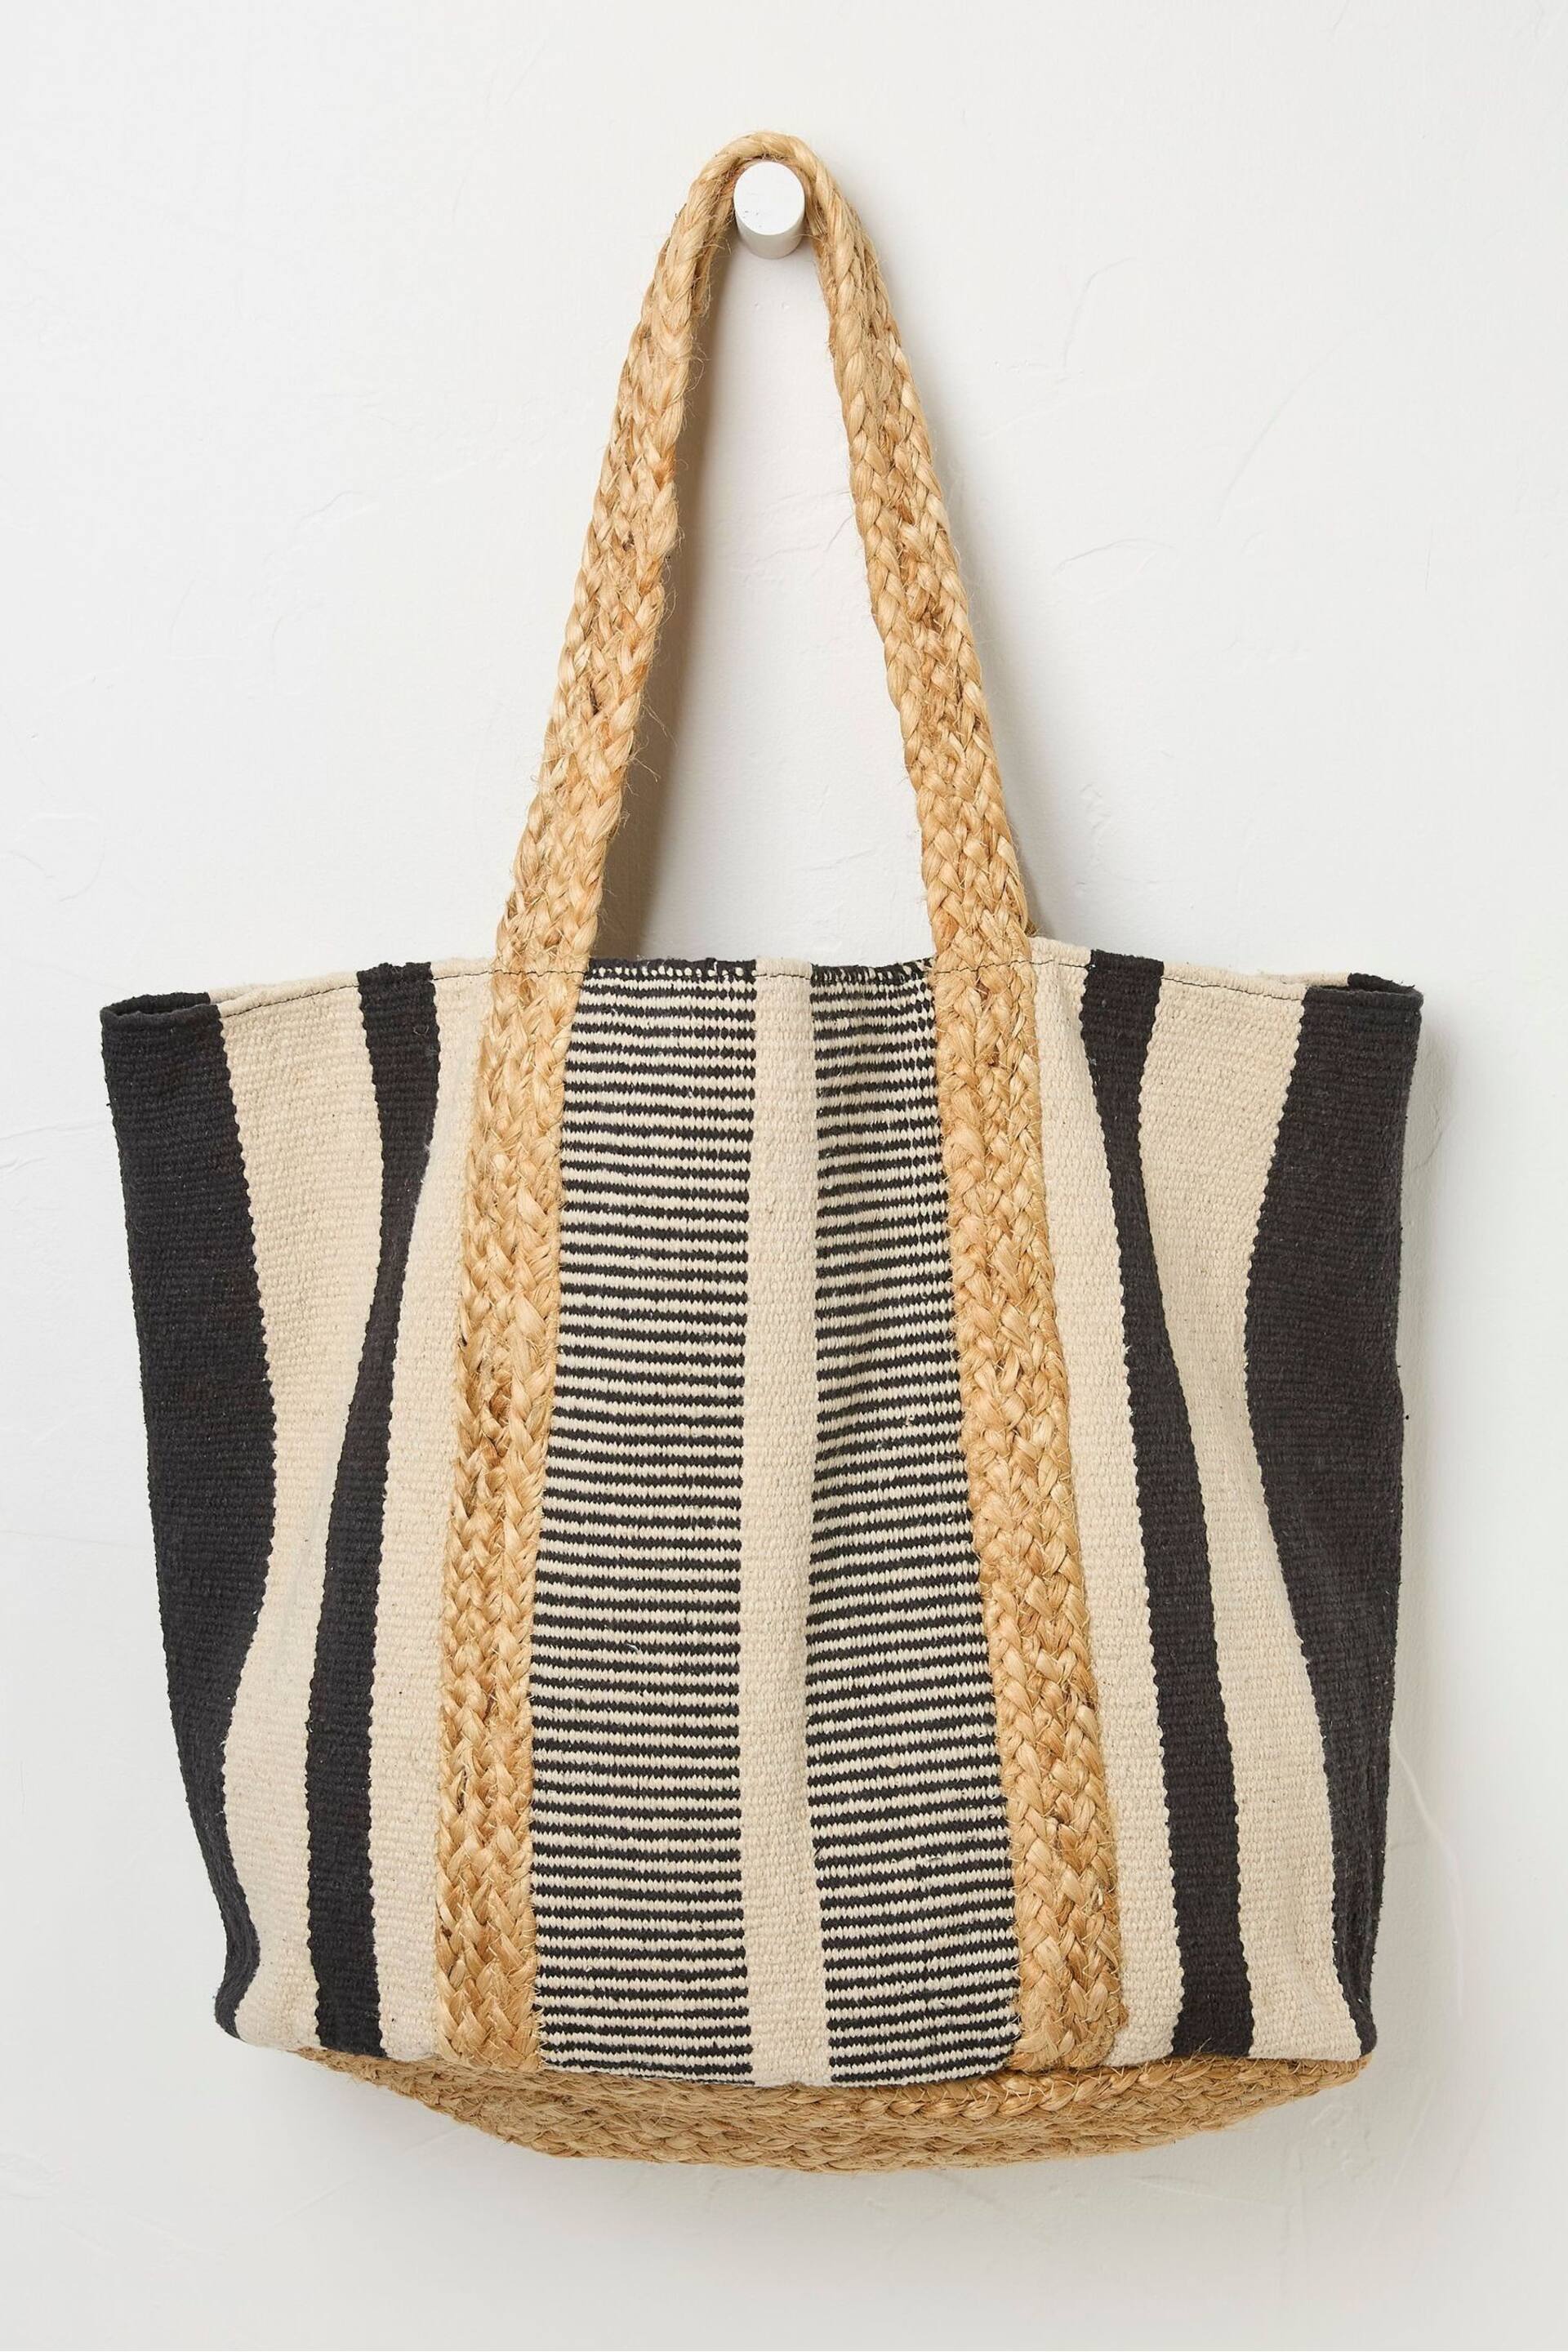 FatFace Natural Naomi Stripe Woven Beach Bag - Image 1 of 3